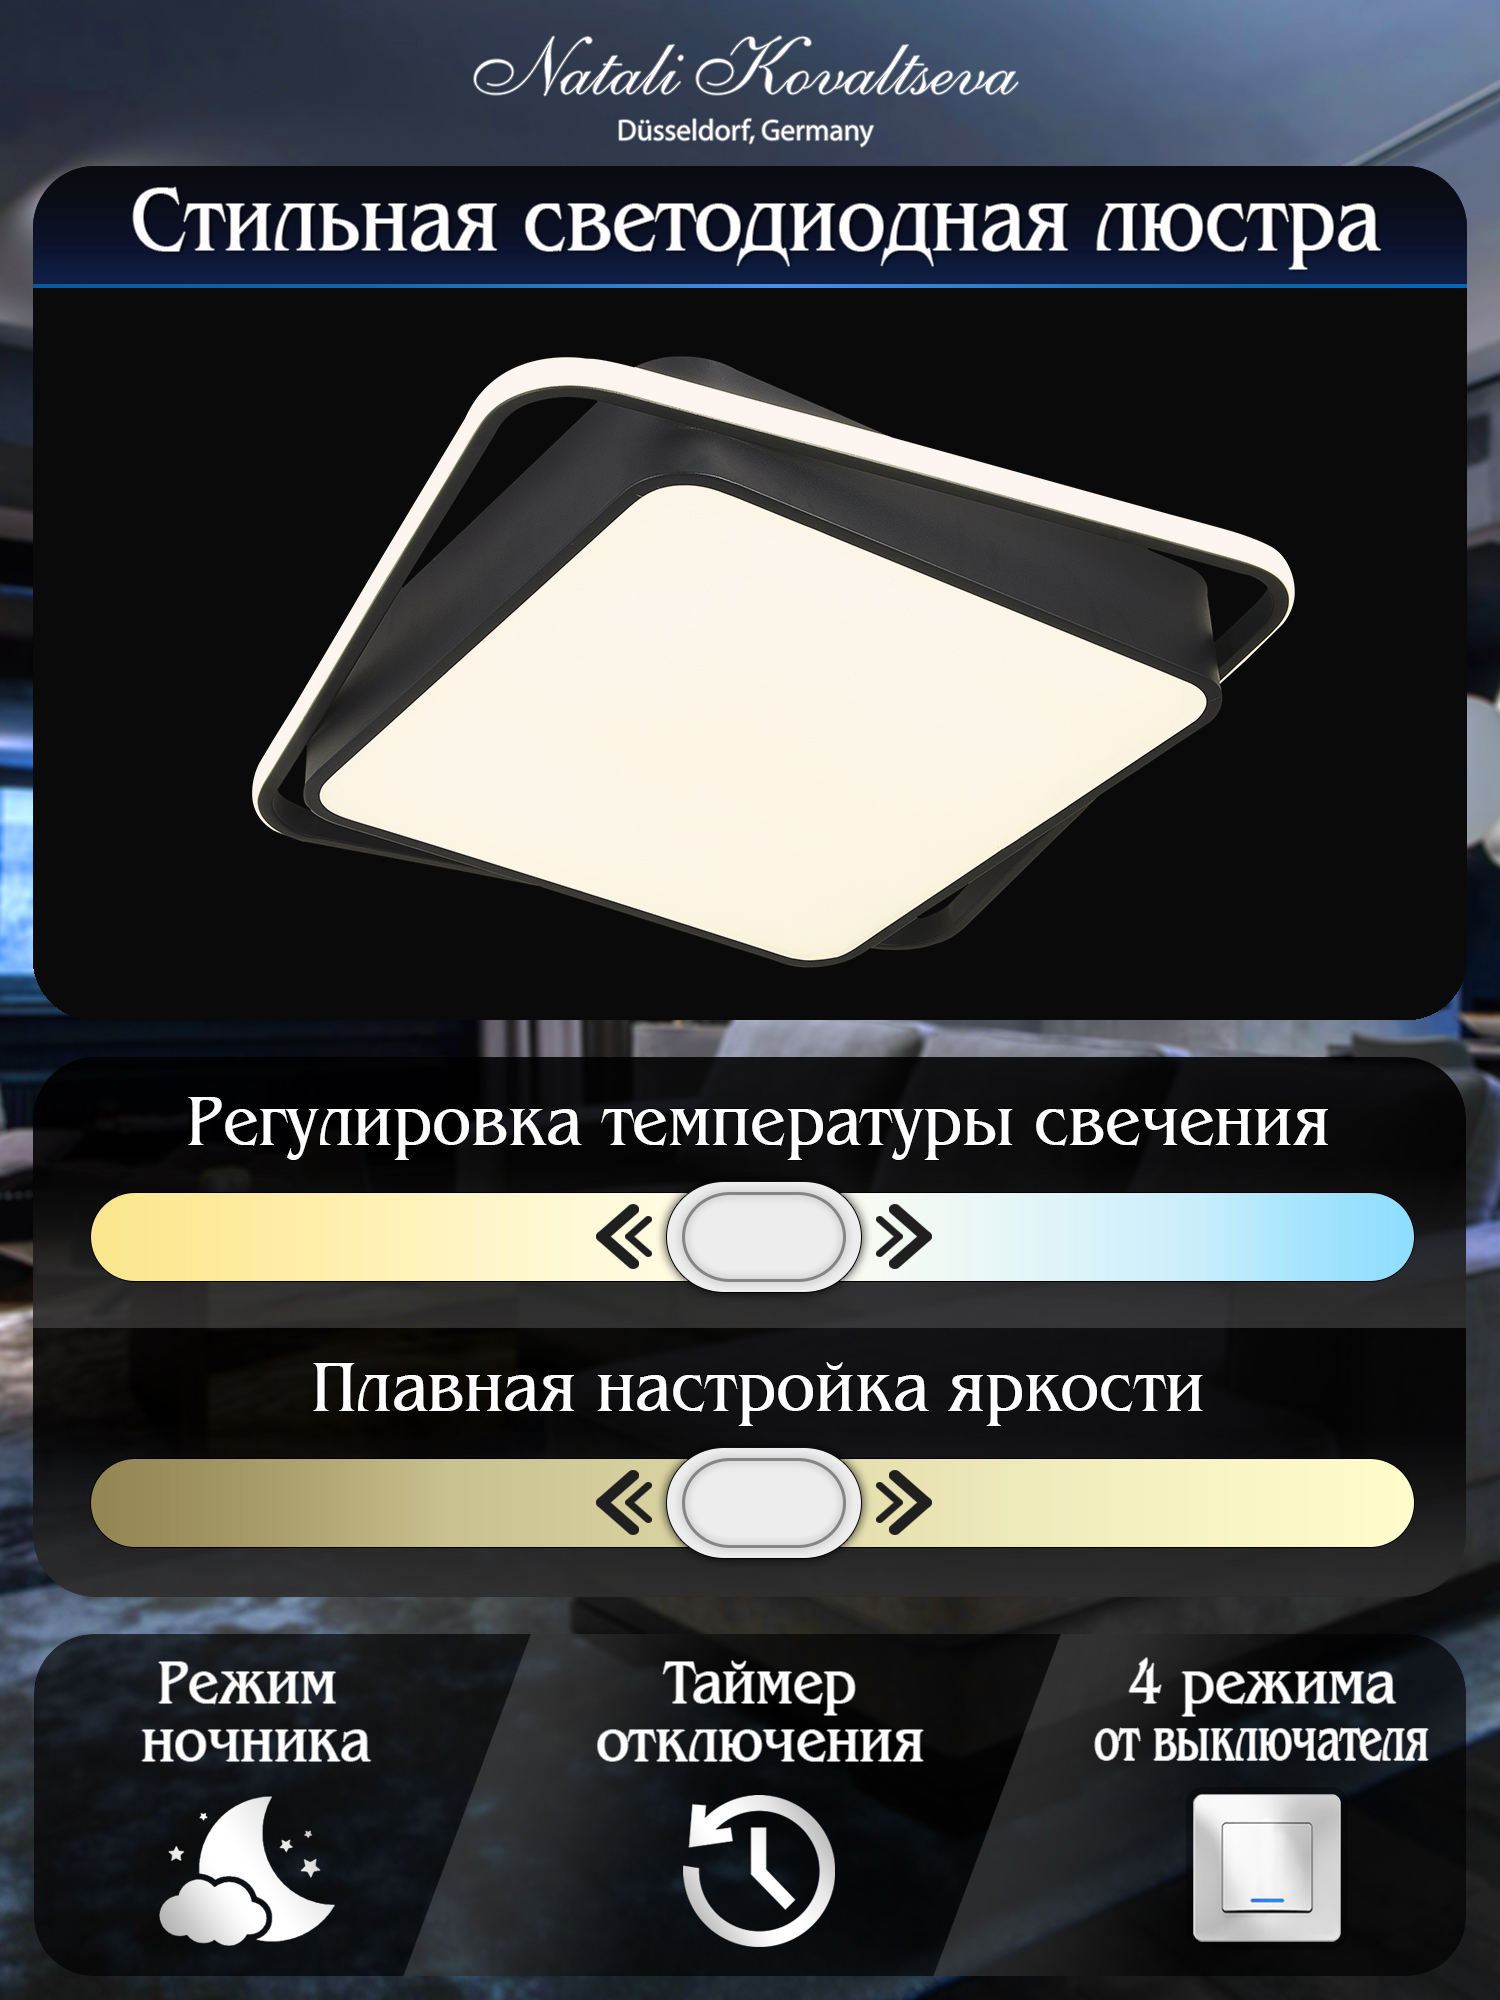 Светодиодный светильник NATALI KOVALTSEVA люстра 140W чёрный LED - фото 3